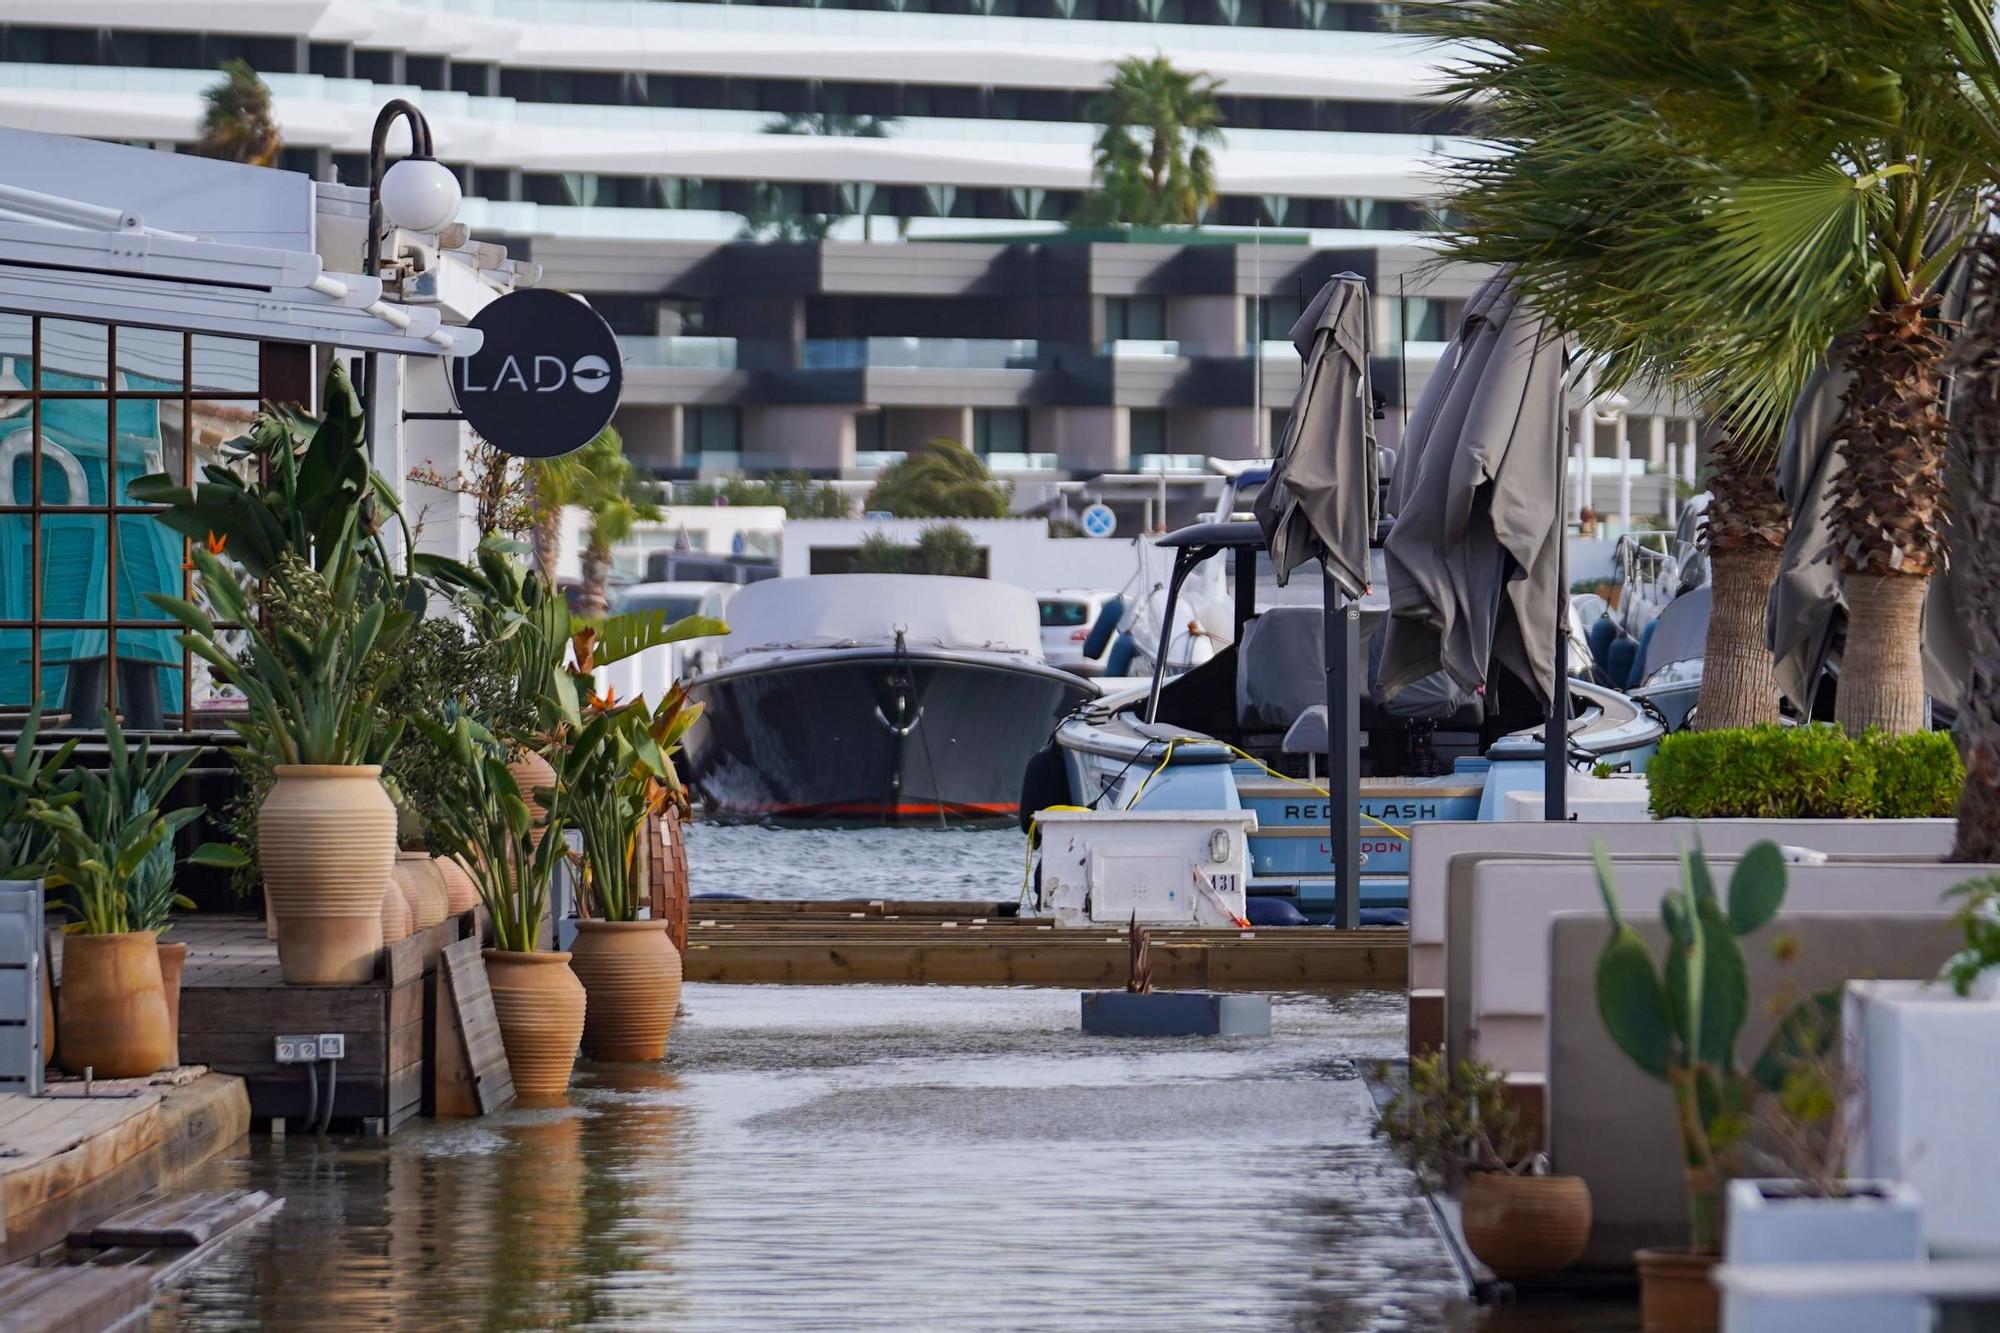 El temporal inunda de nuevo la zona de Botafoc Ibiza